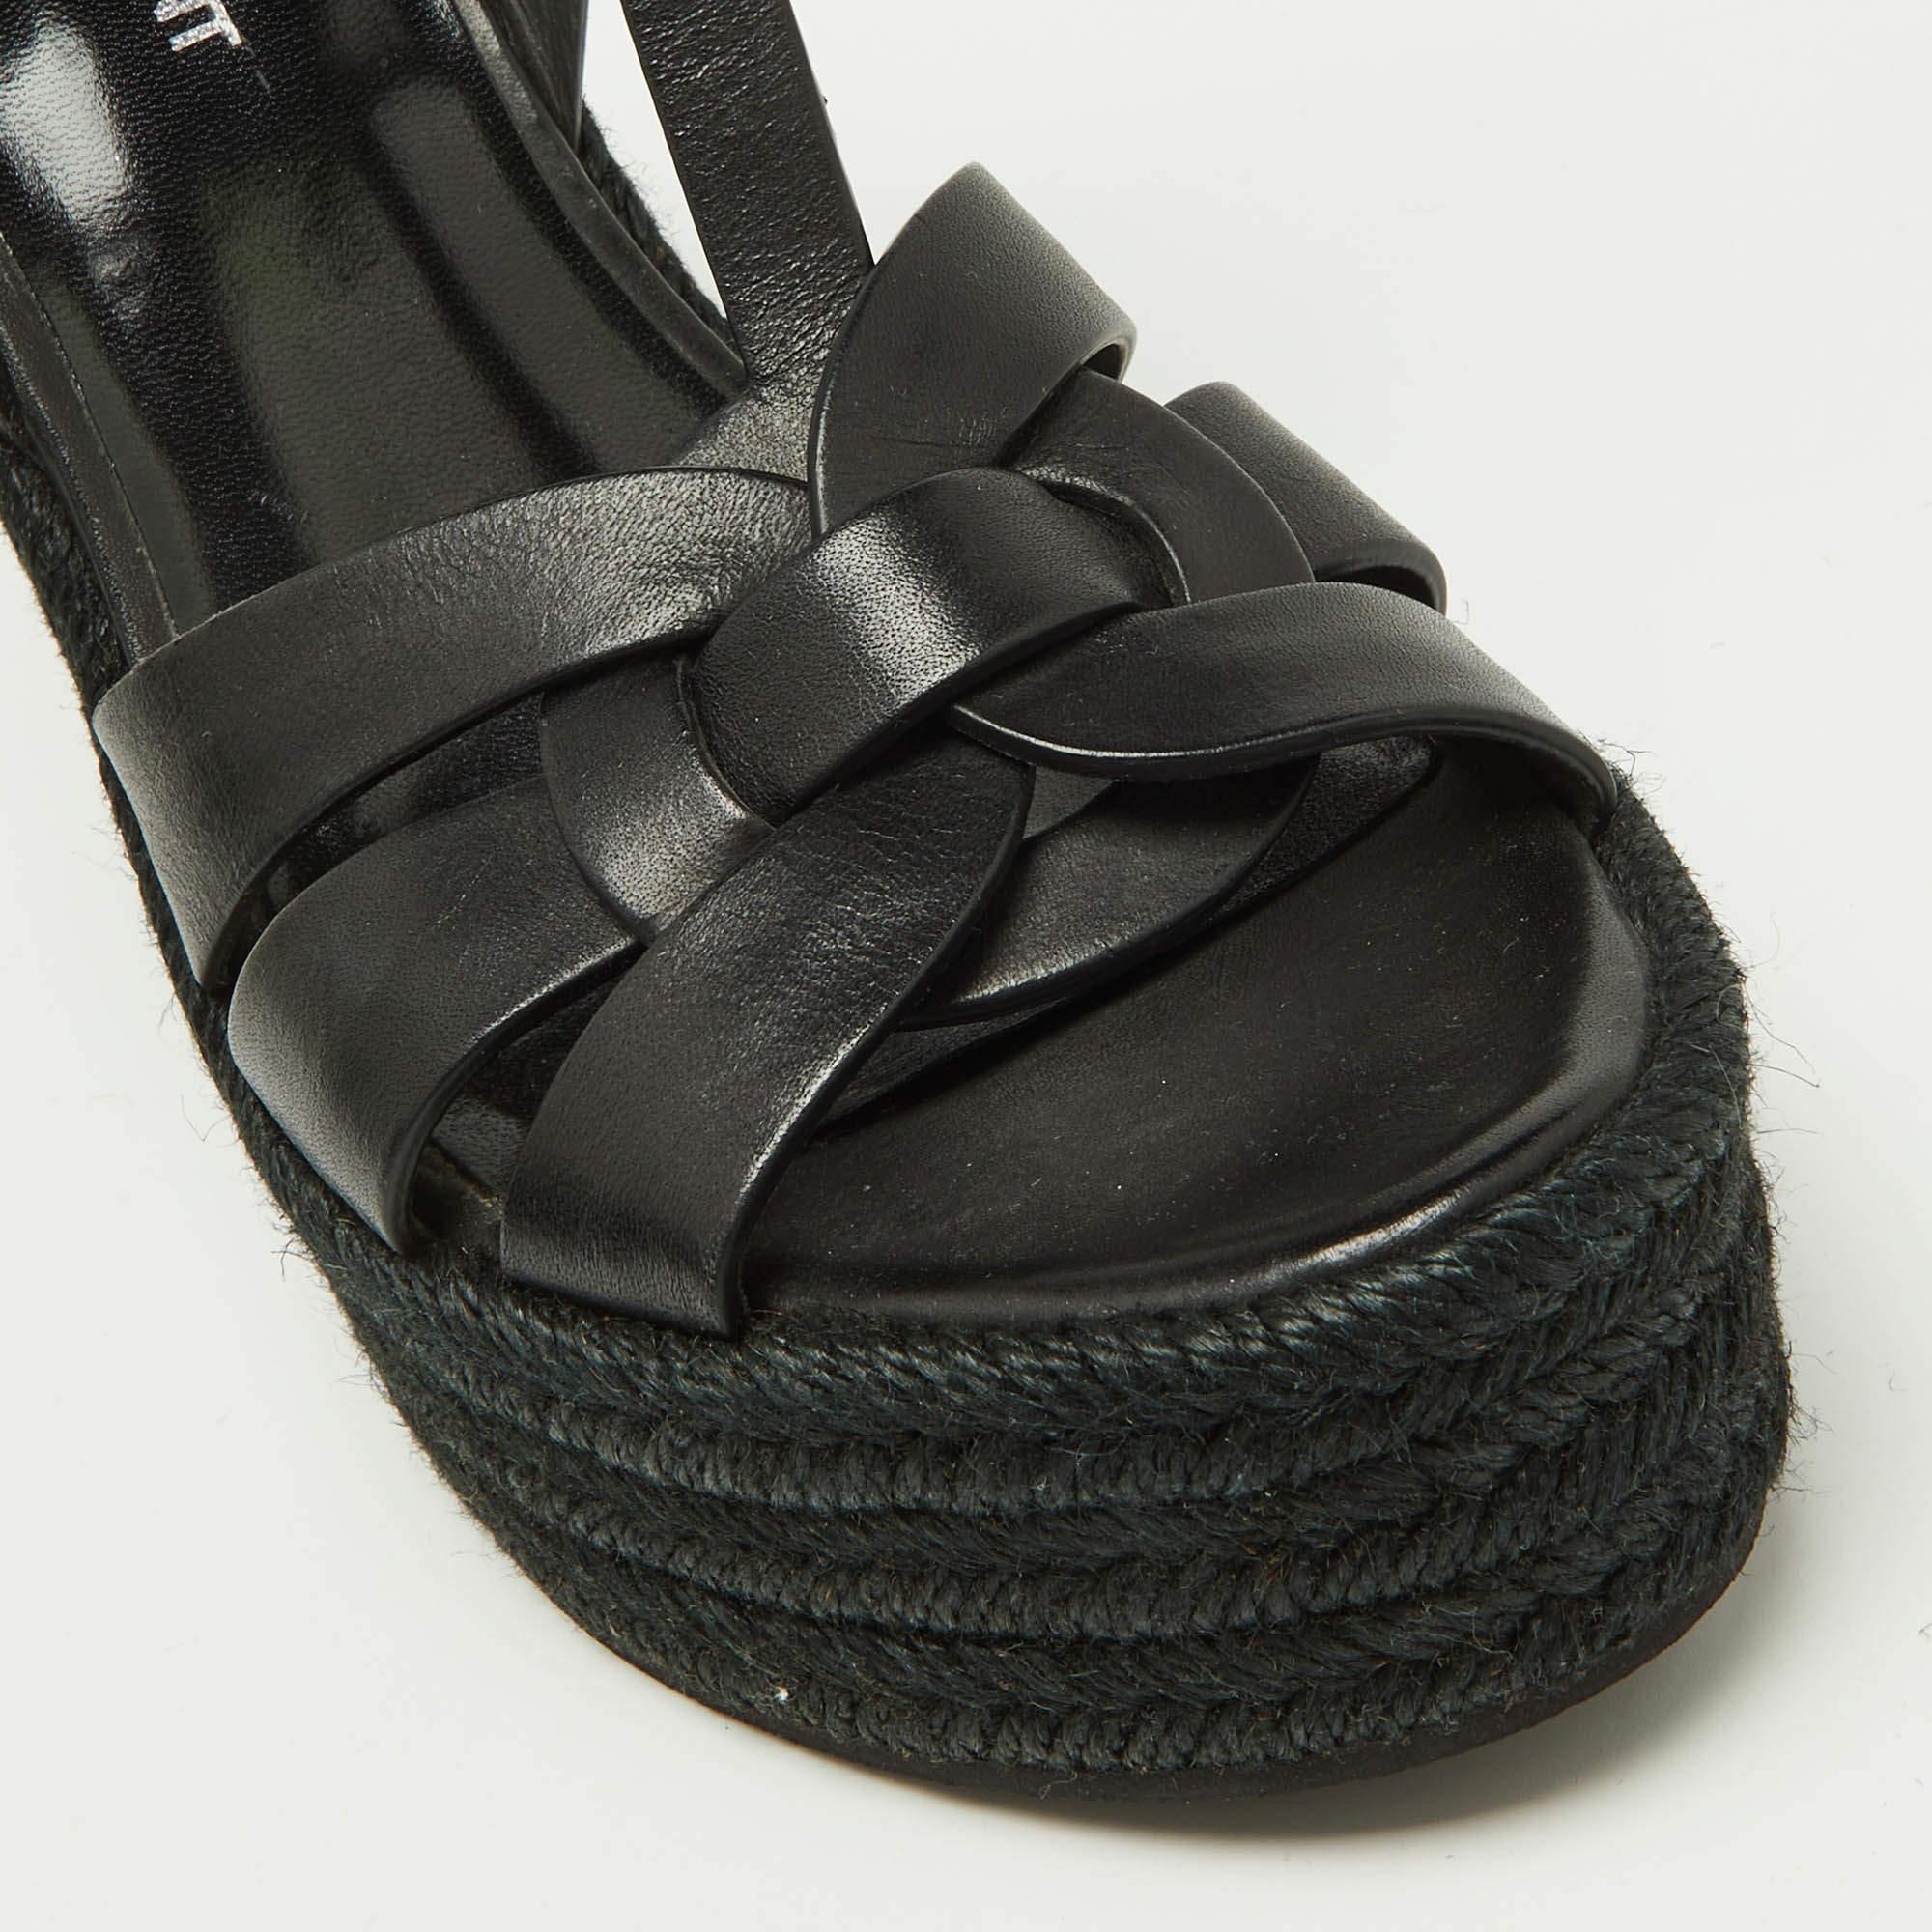 Women's Saint Laurent Black Leather Tribute Espadrilles Wedge Sandals Size 38